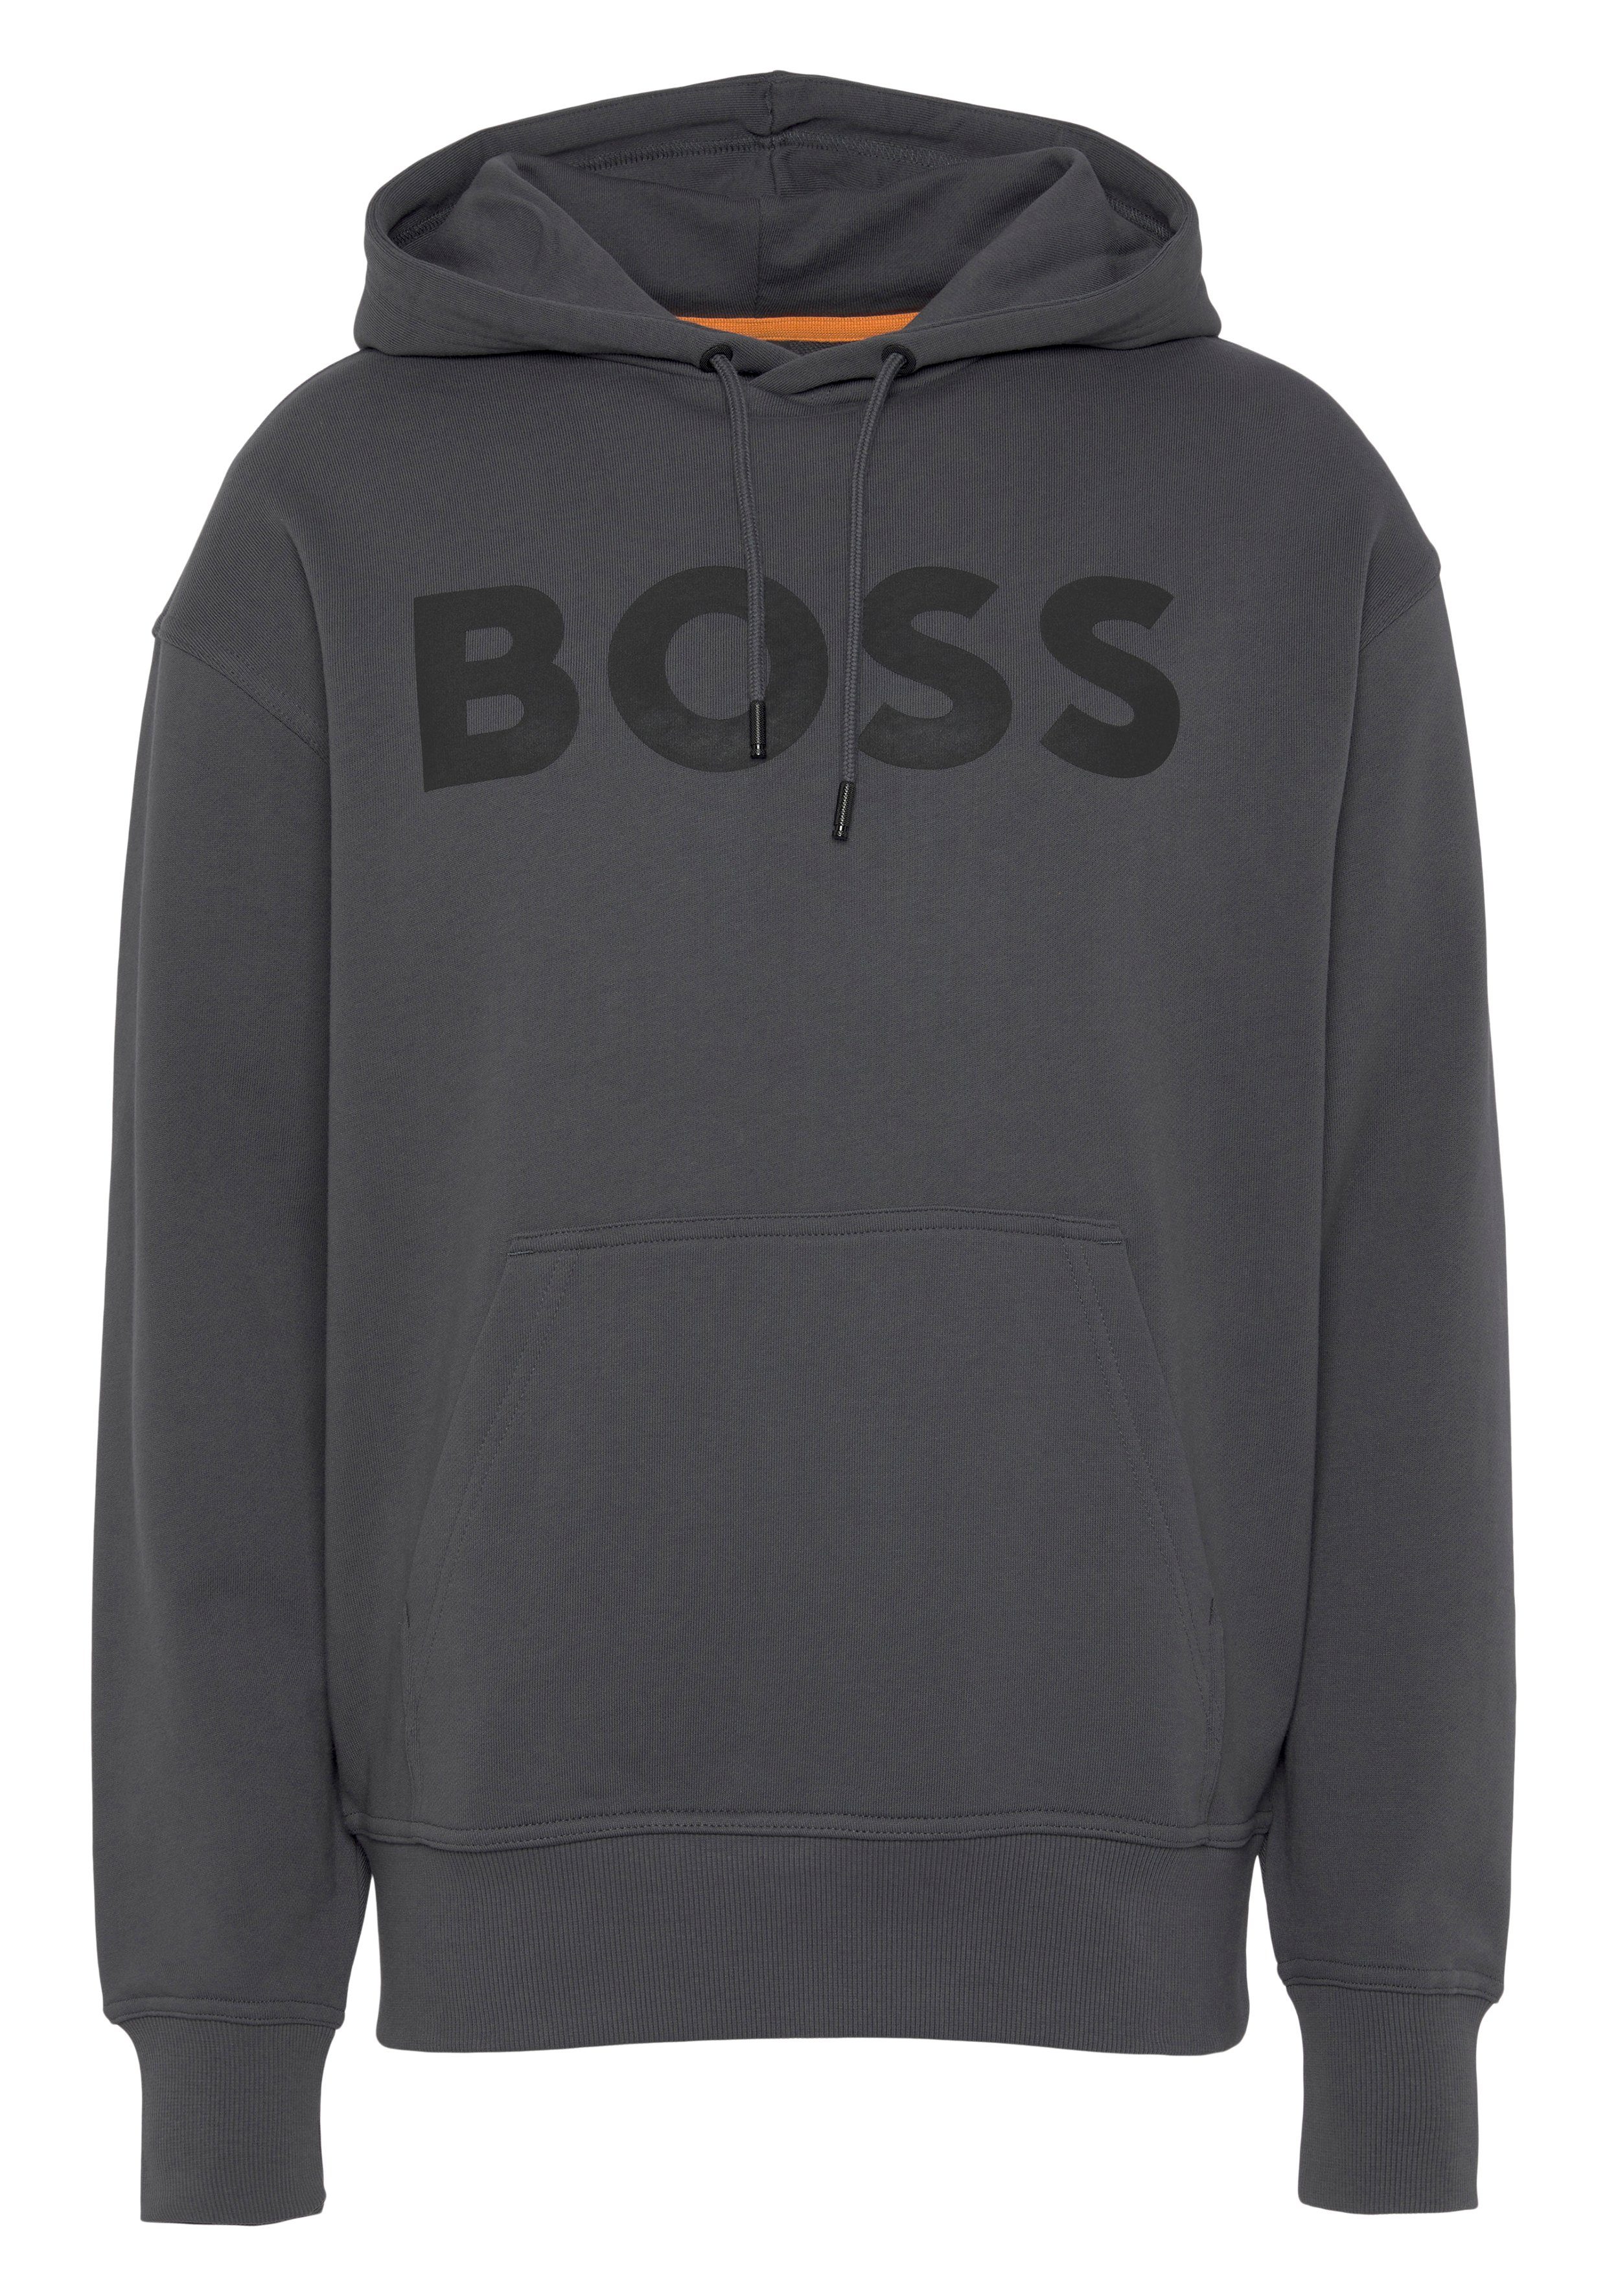 Logodruck ORANGE BOSS WebasicHood grey dark Sweatshirt mit weißem